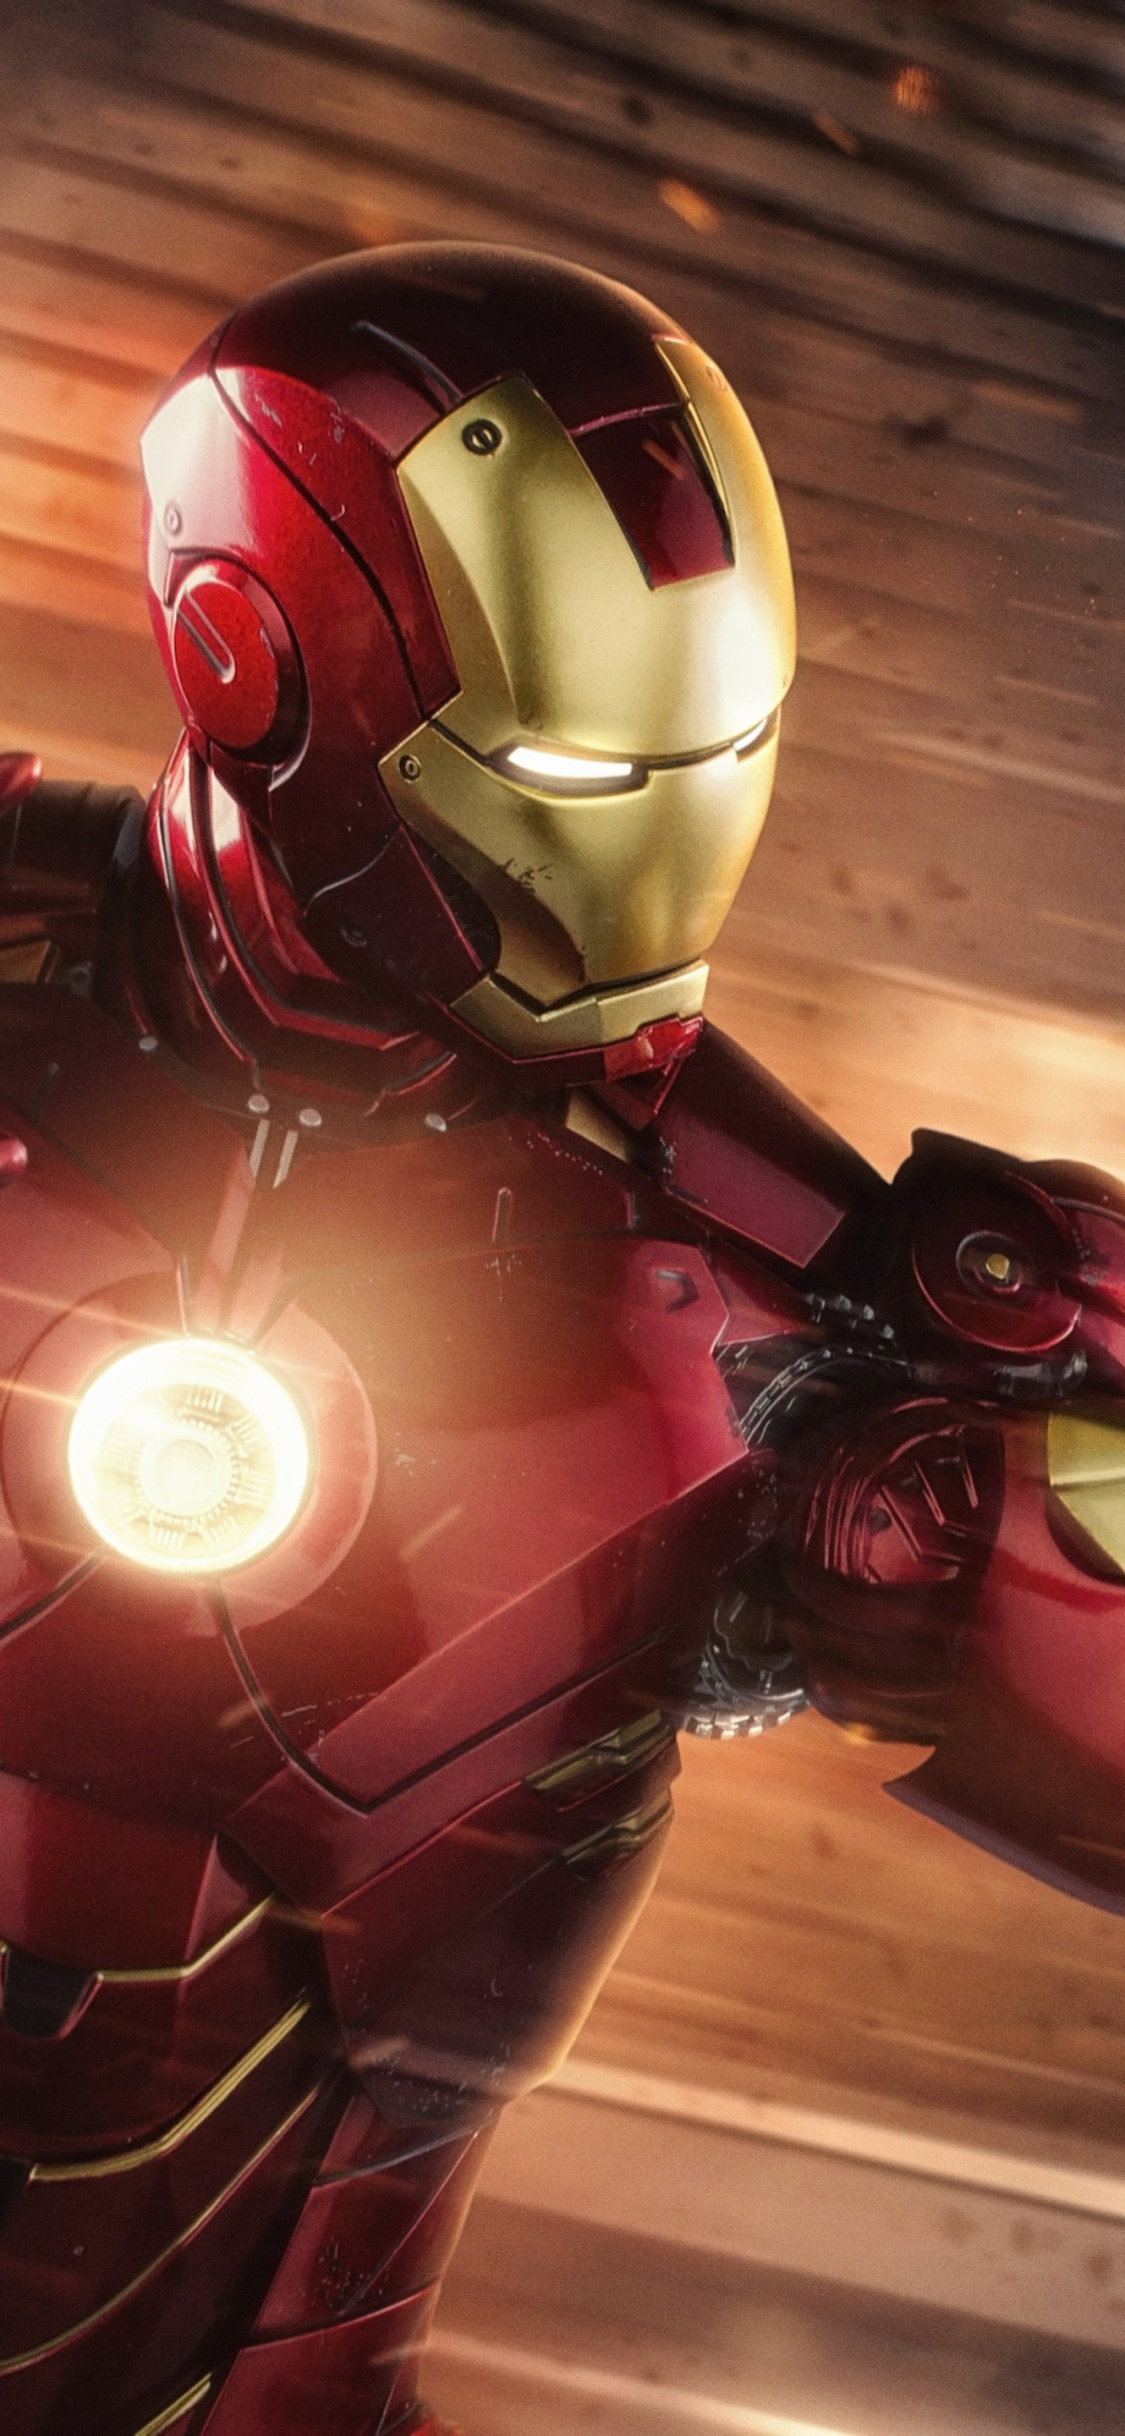 Descarga gratuita de fondo de pantalla para móvil de Iron Man, Robert Downey Jr, Películas.